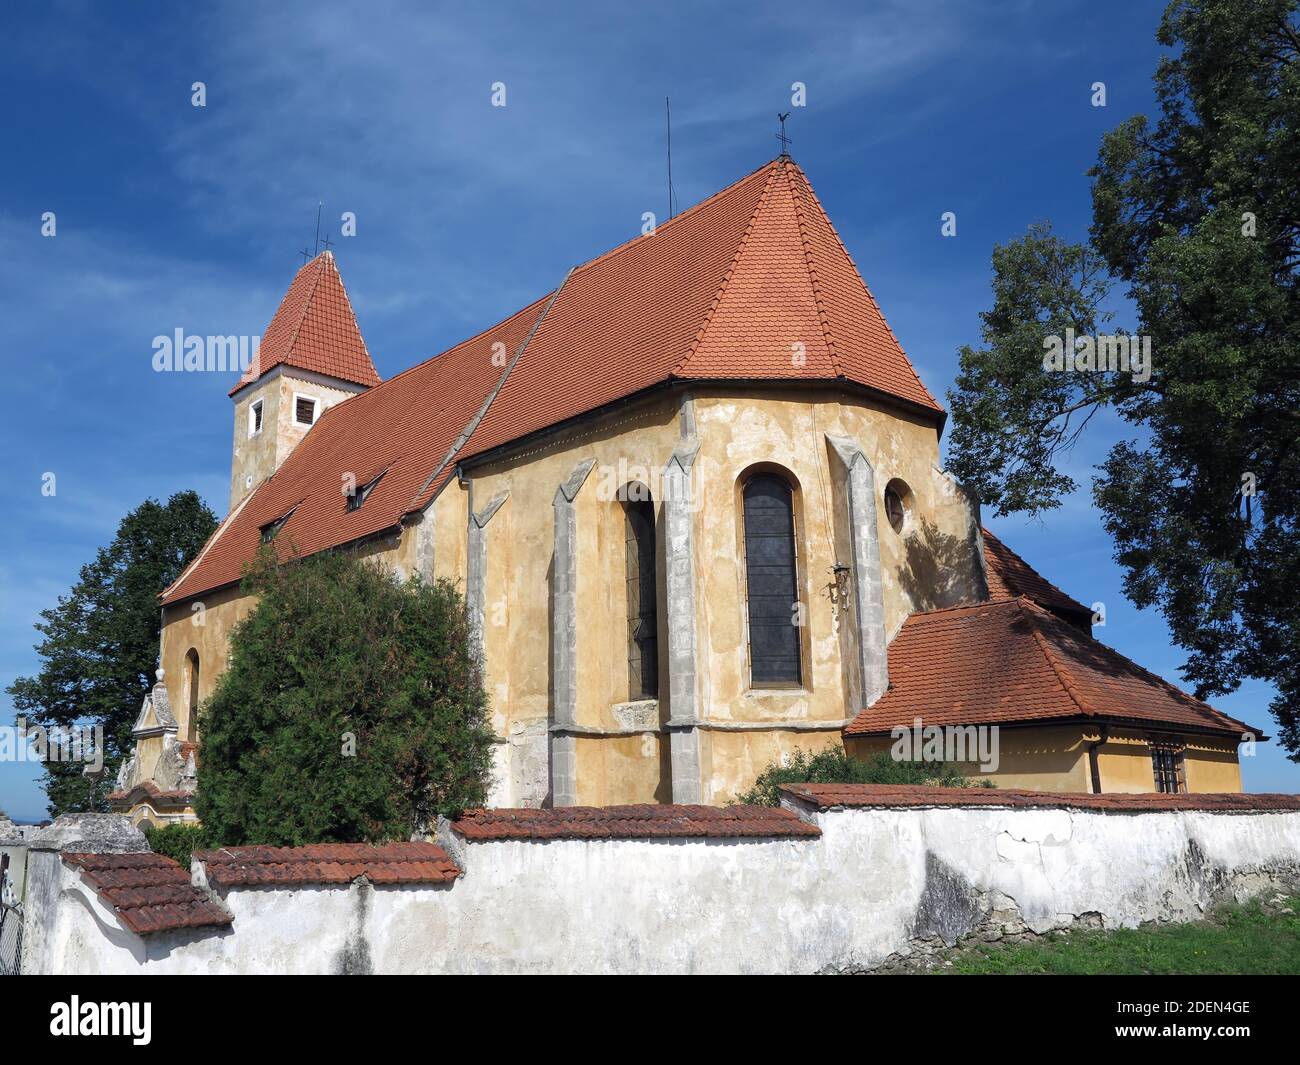 Chiesa di San Bartolomeo nel villaggio di Malonty - originariamente una cappella gotica di Santa Caterina dalla prima metà del 14 ° secolo Foto Stock